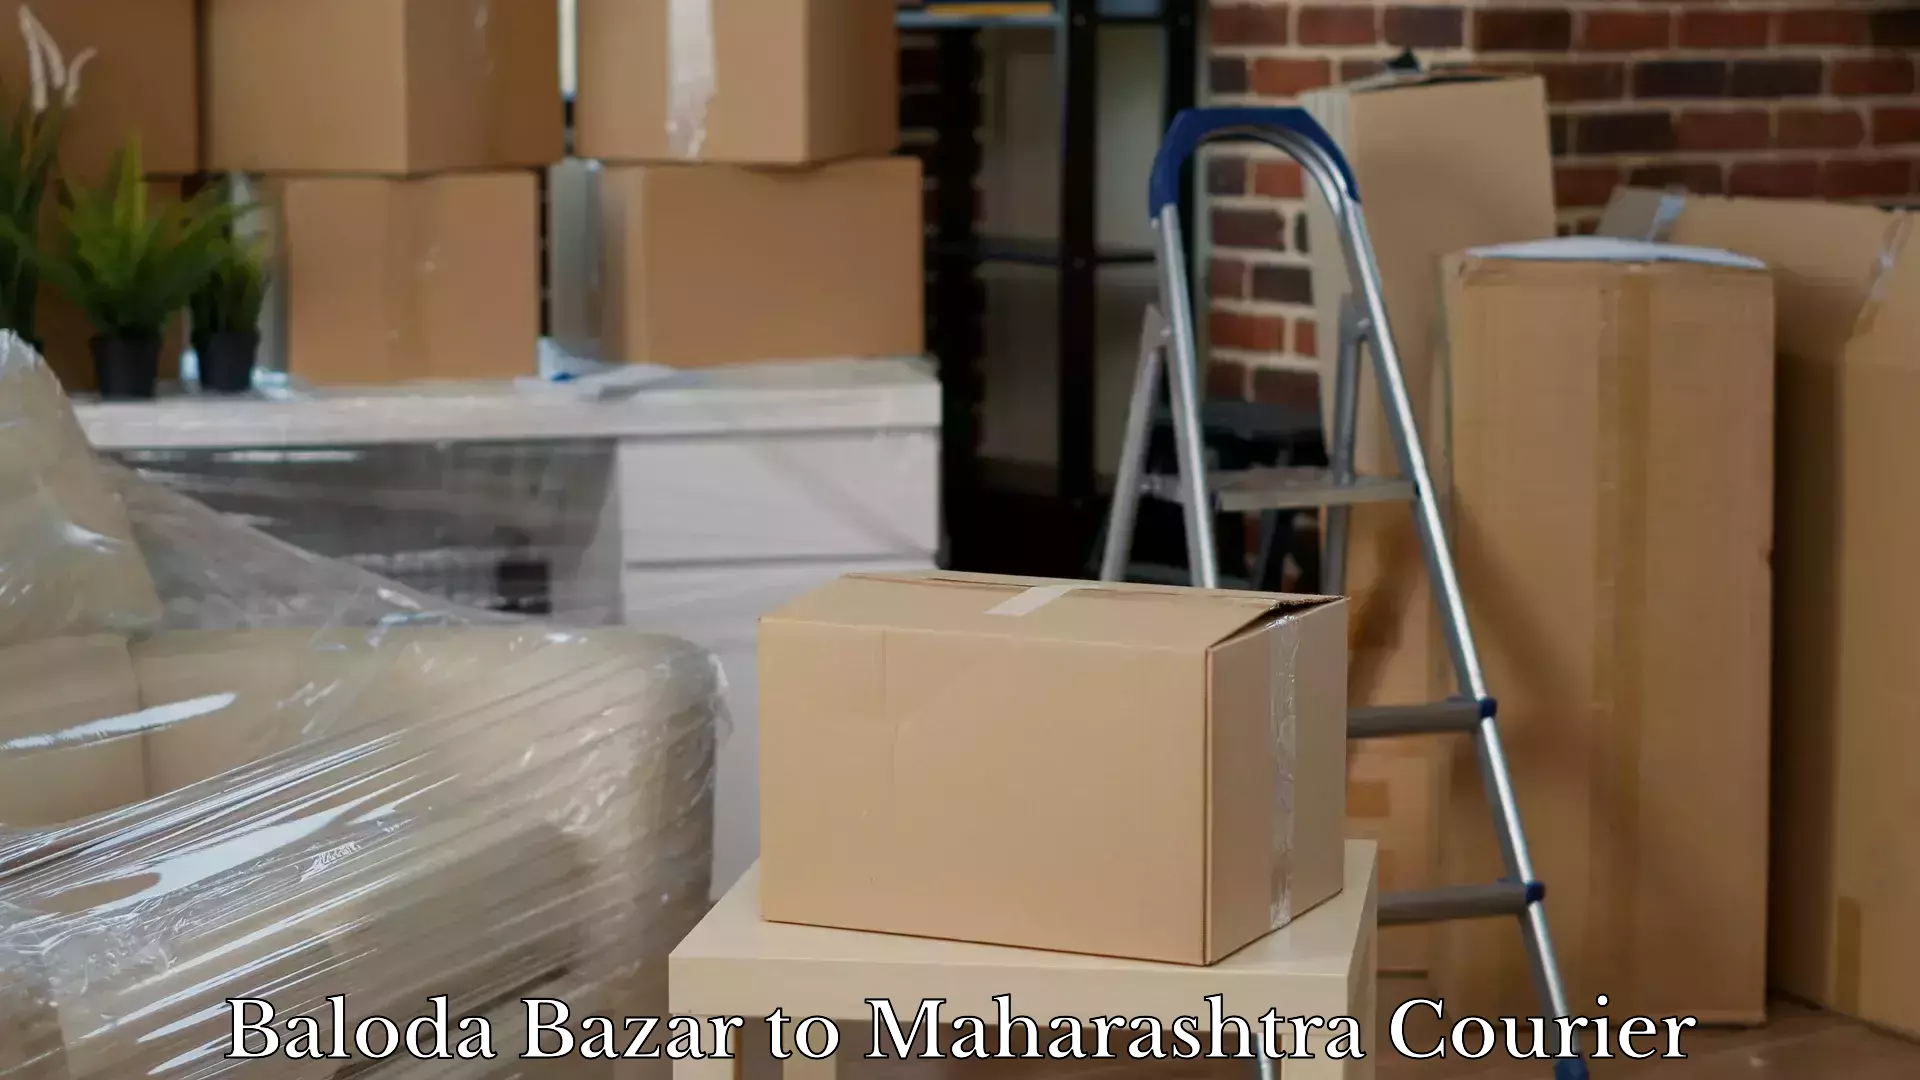 Hassle-free luggage shipping Baloda Bazar to Maharashtra